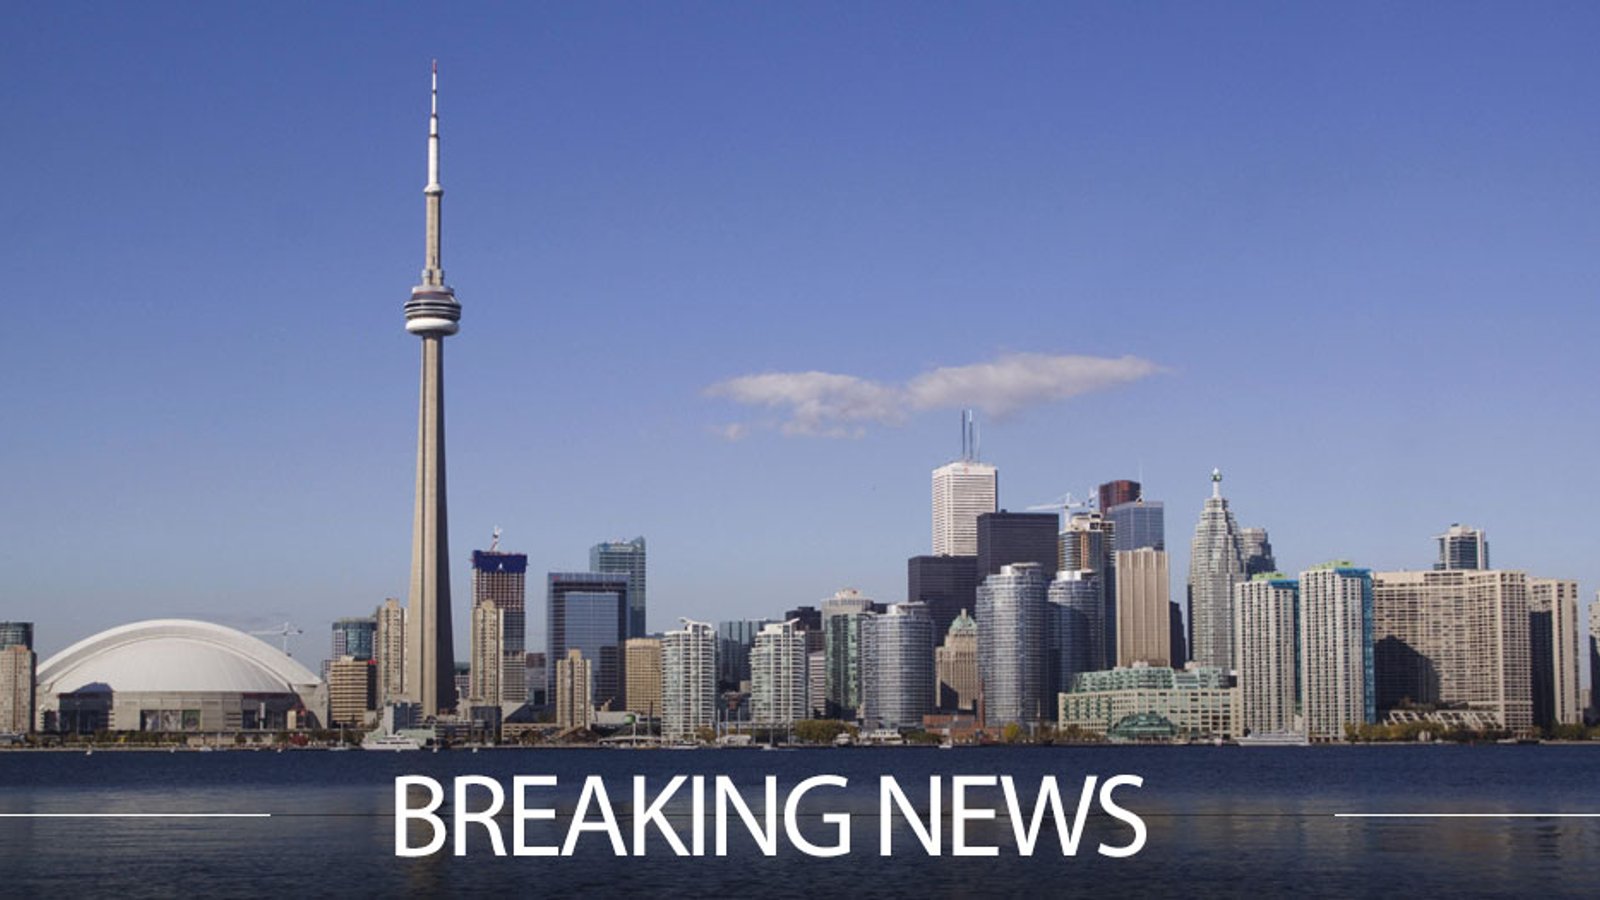 Toronto star suspended for homophobic slur